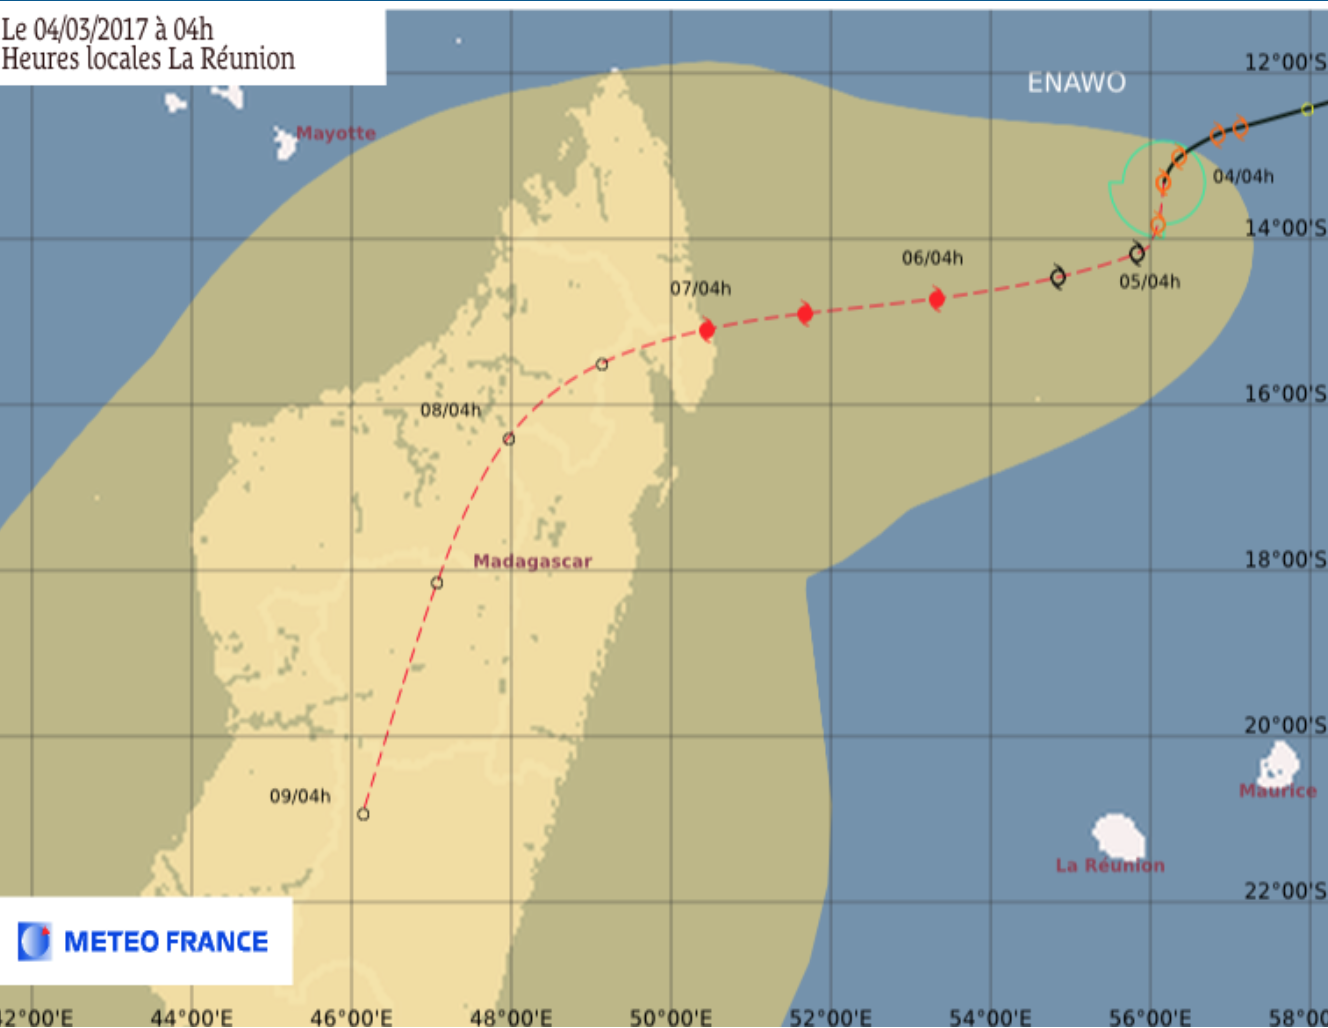 La tempête tropicale modérée Enawo à 840 km de La Réunion